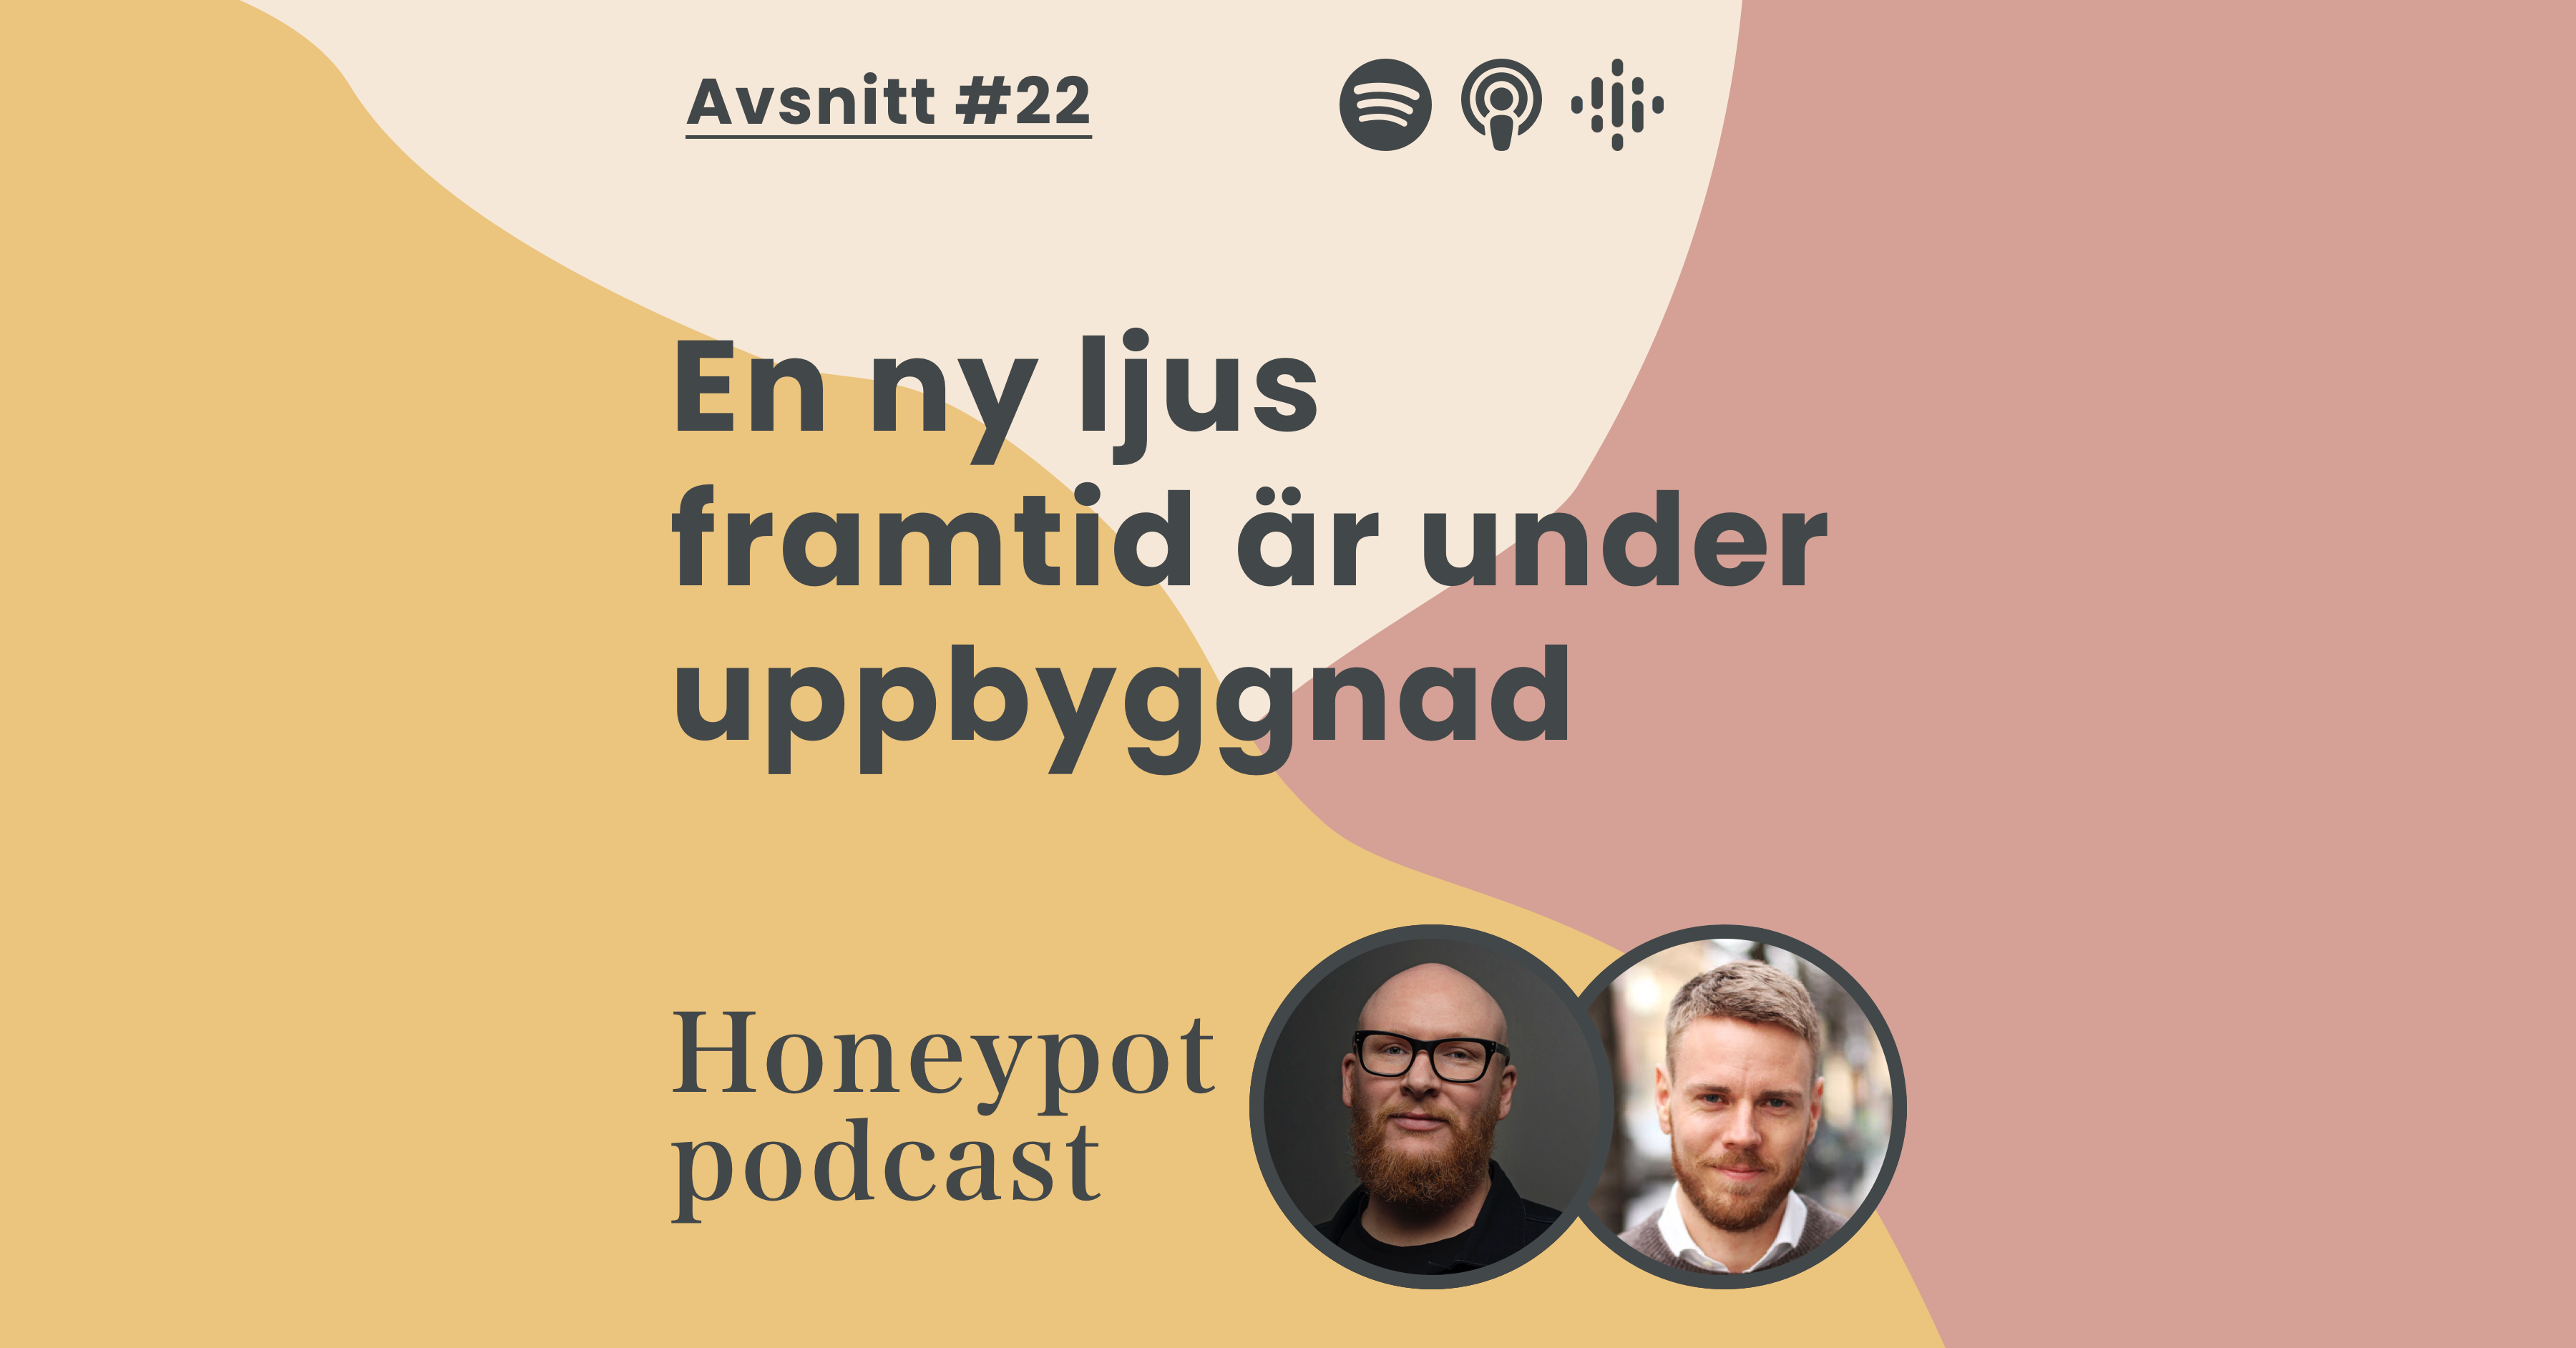 Honeypot Podcast - För dig som vill få bättre insikter, idéer och resultat i ditt innovationsarbete